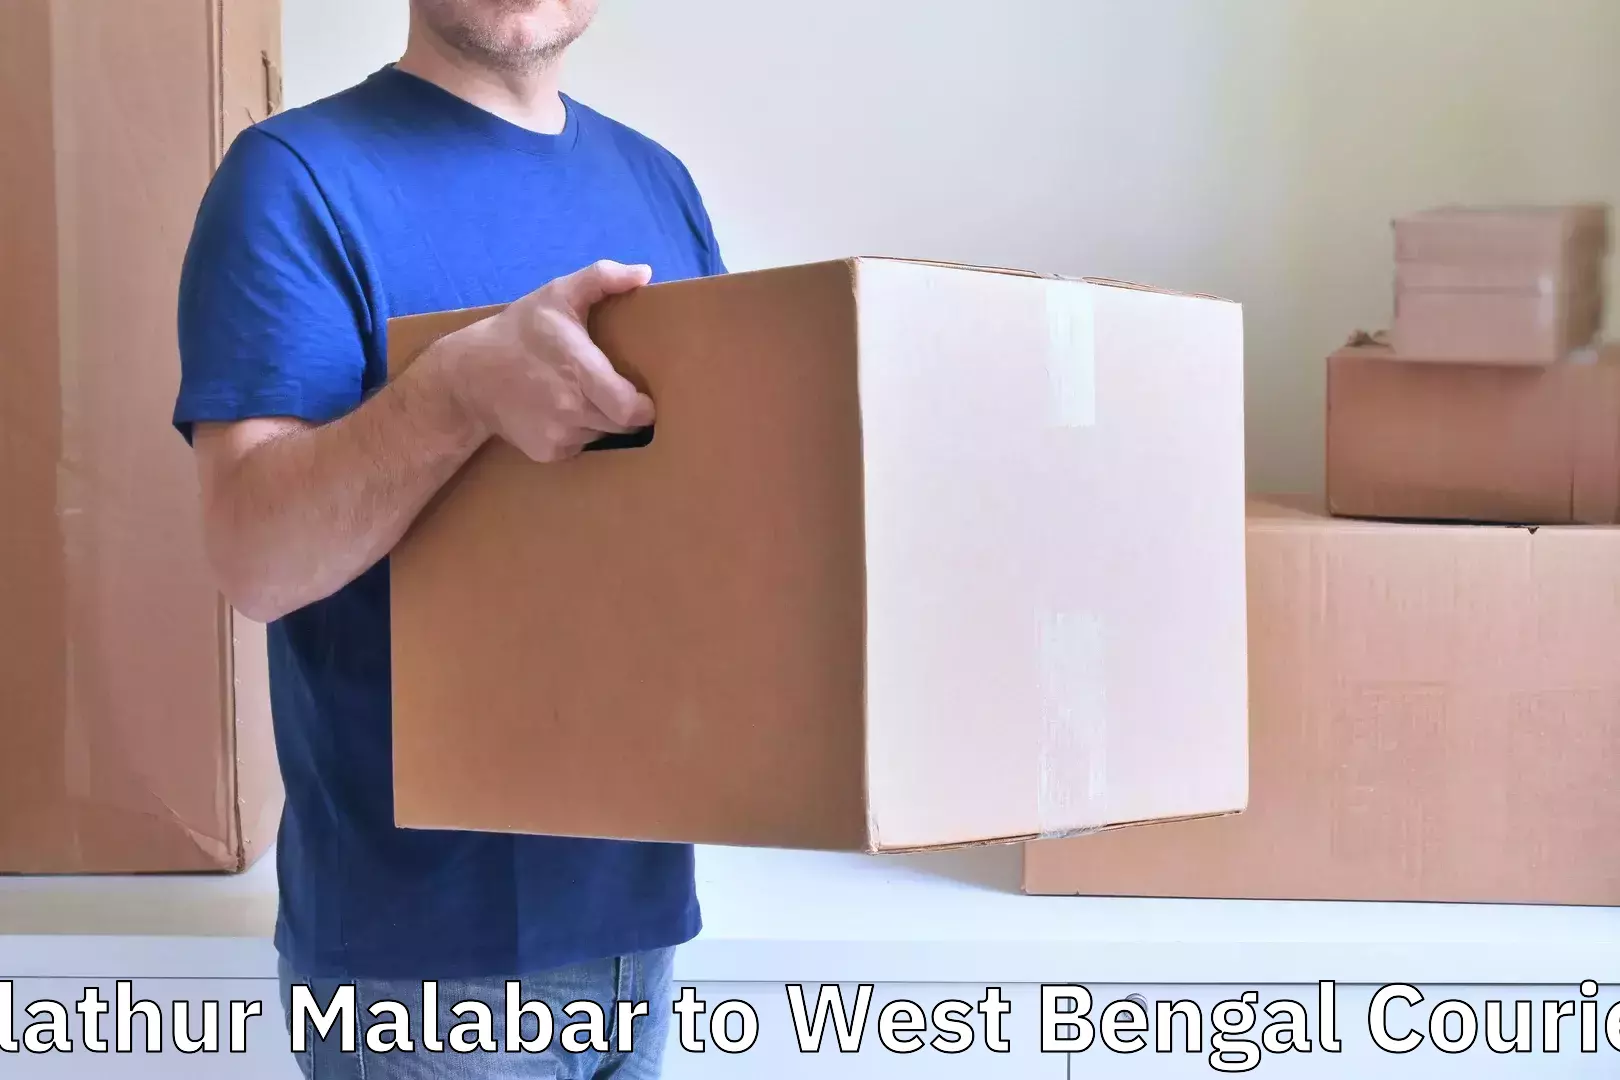 Baggage transport network Alathur Malabar to Palasi